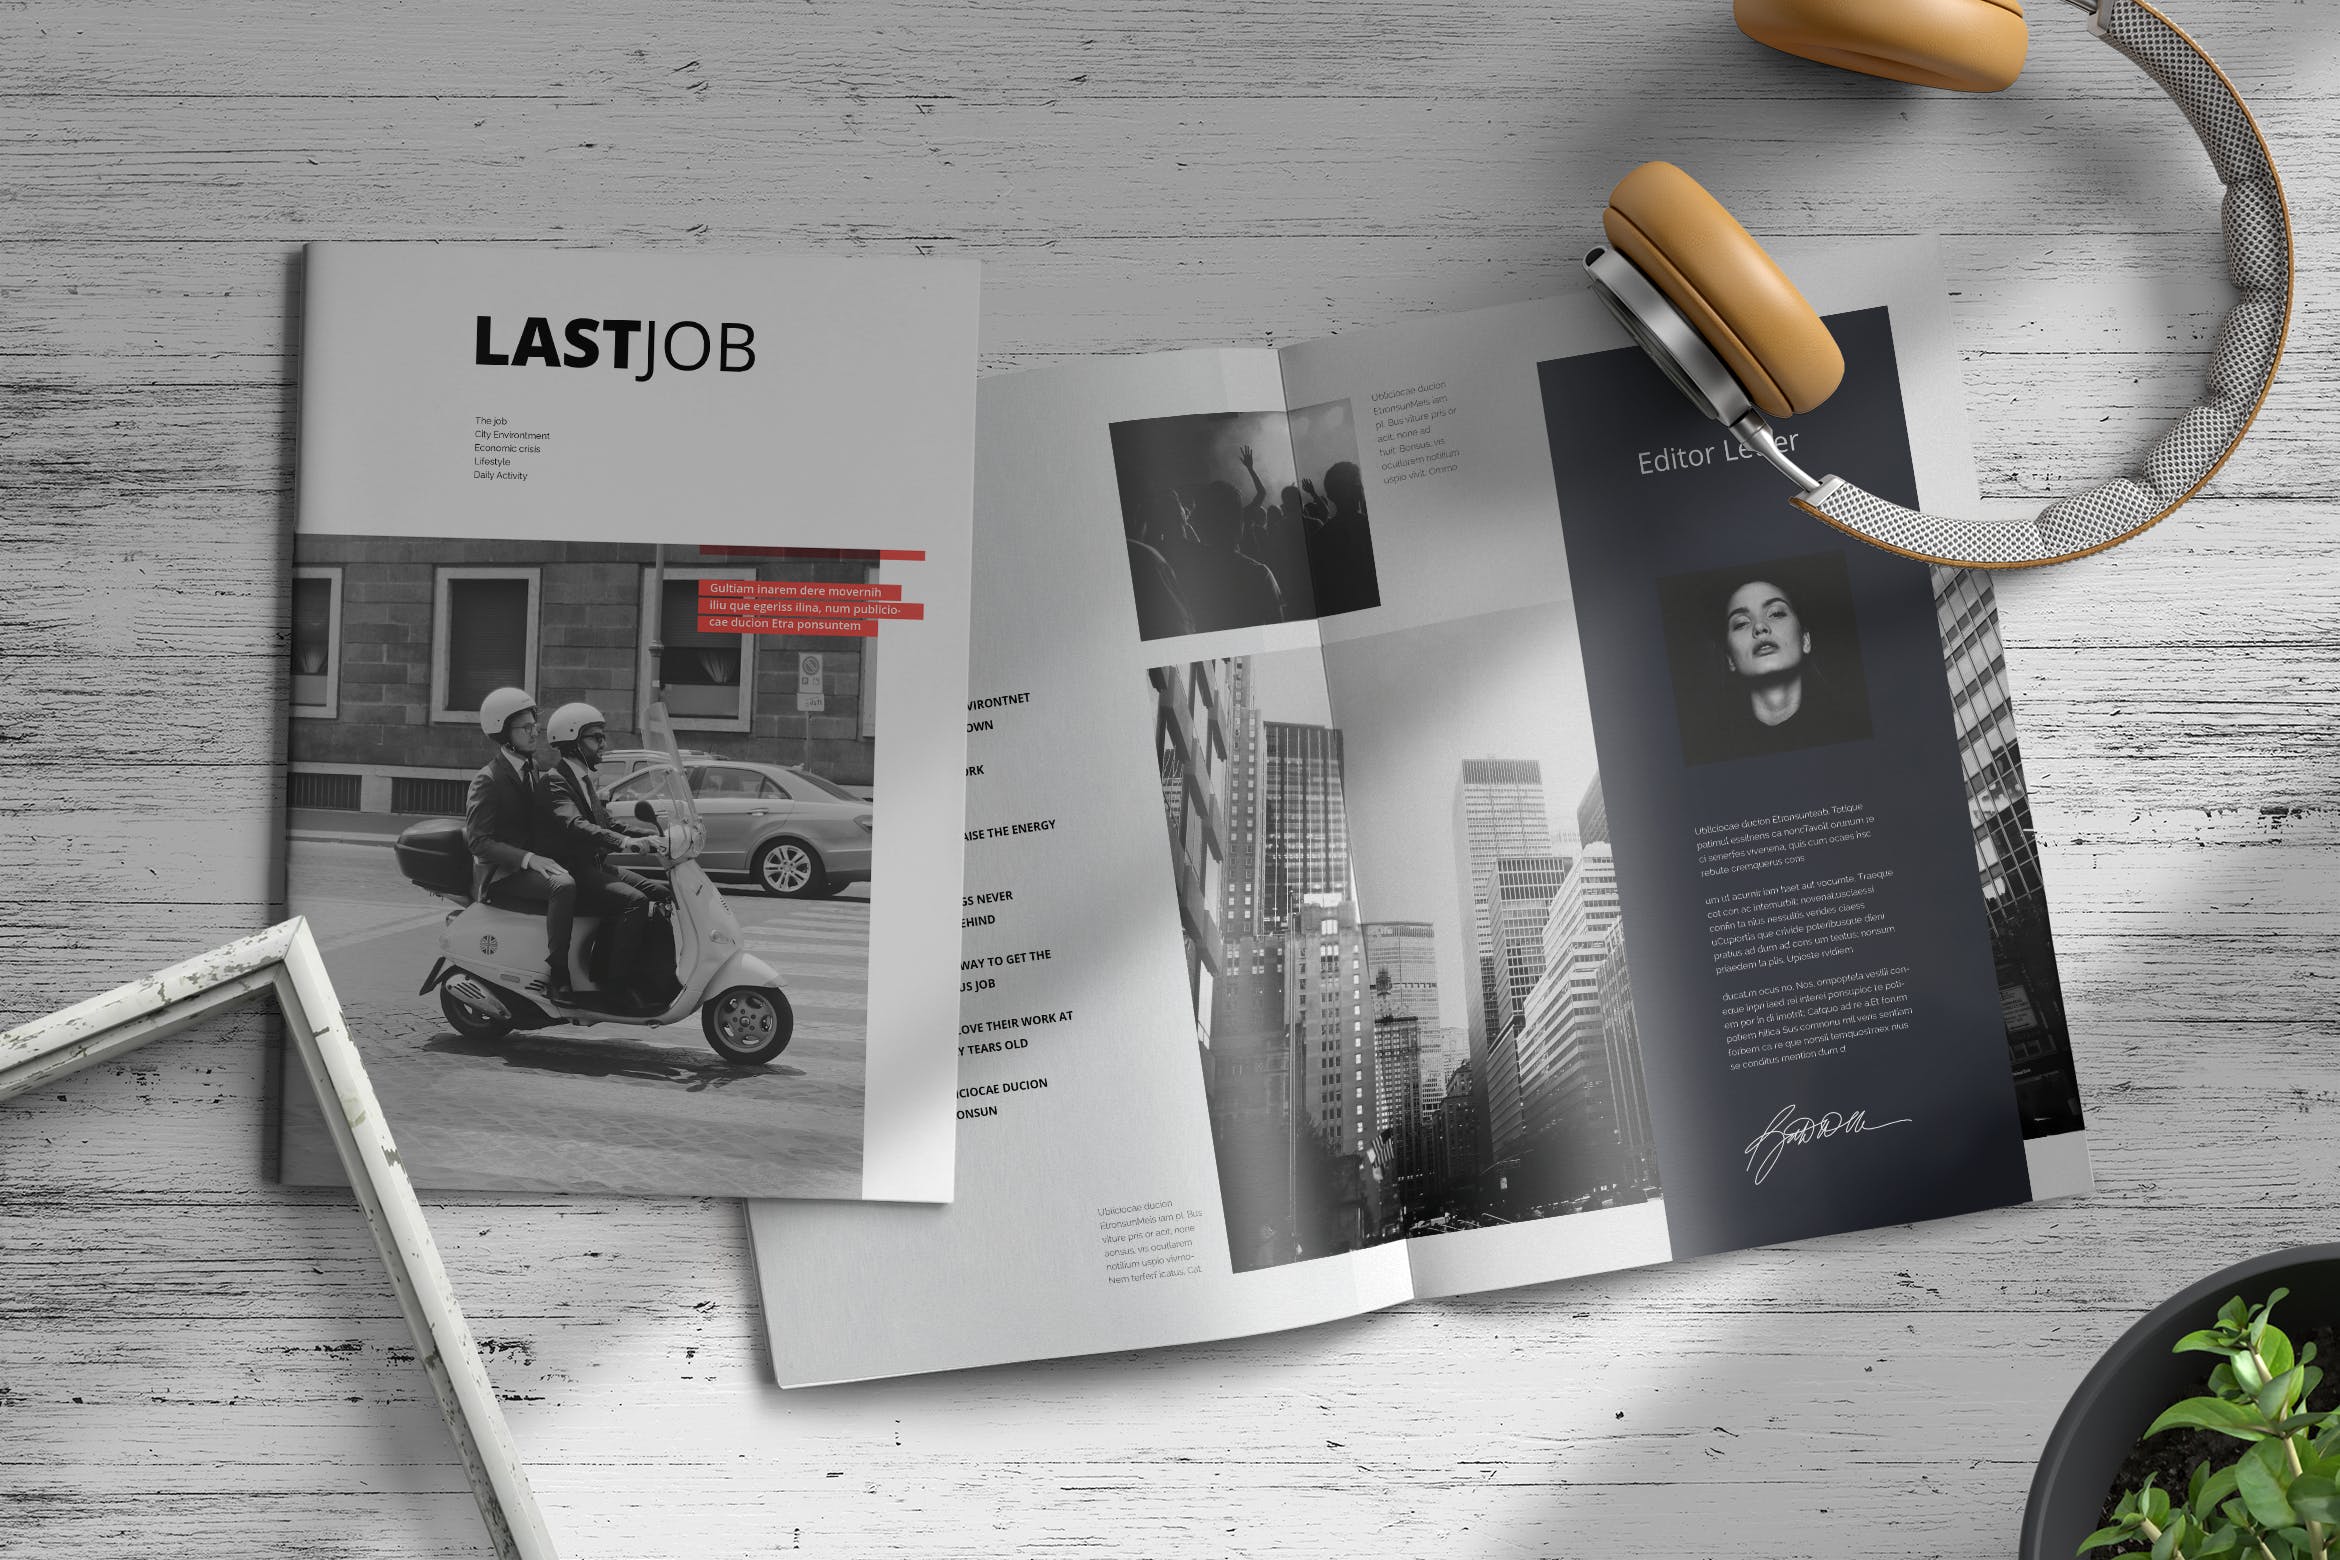 职场/人力资源主题蚂蚁素材精选杂志排版设计模板 Lastjob | Magazine Template插图